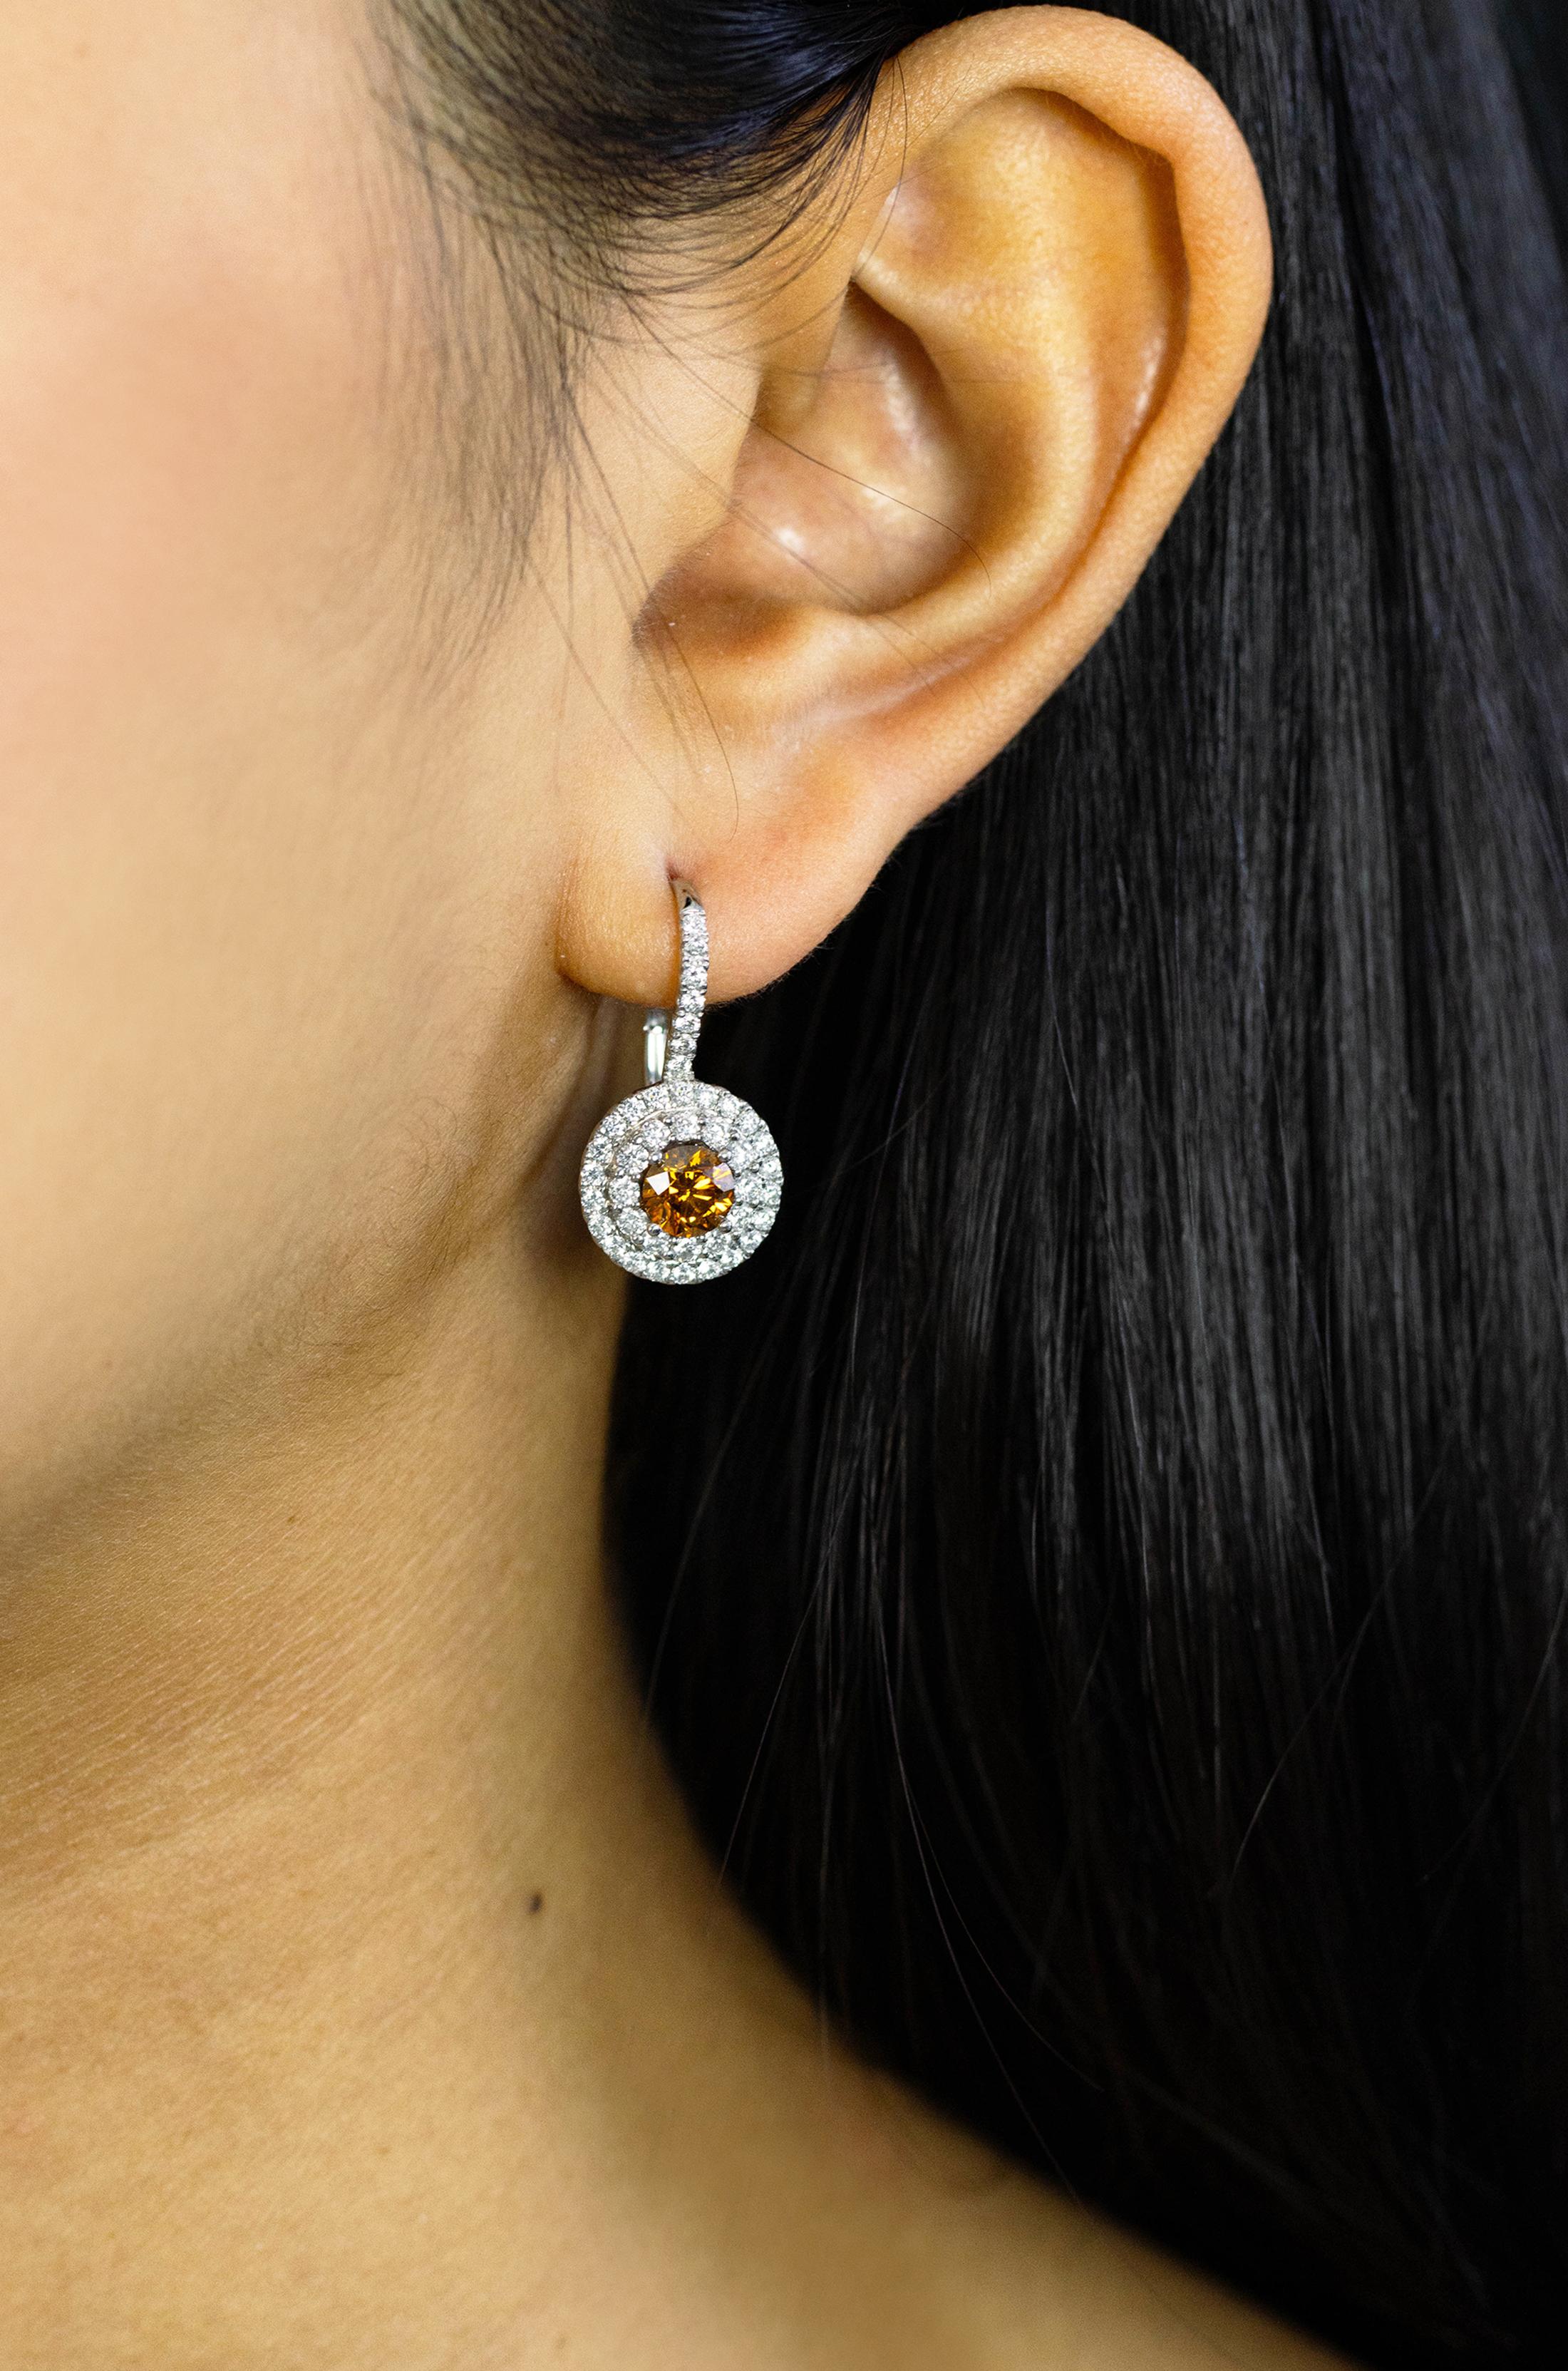 Dieses wunderschöne Paar Ohrringe besteht aus 2 GIA-zertifizierten Mittelsteinen mit einem Gewicht von 0,65 bzw. 0,67 Karat. GIA bescheinigte den Steinen eine 